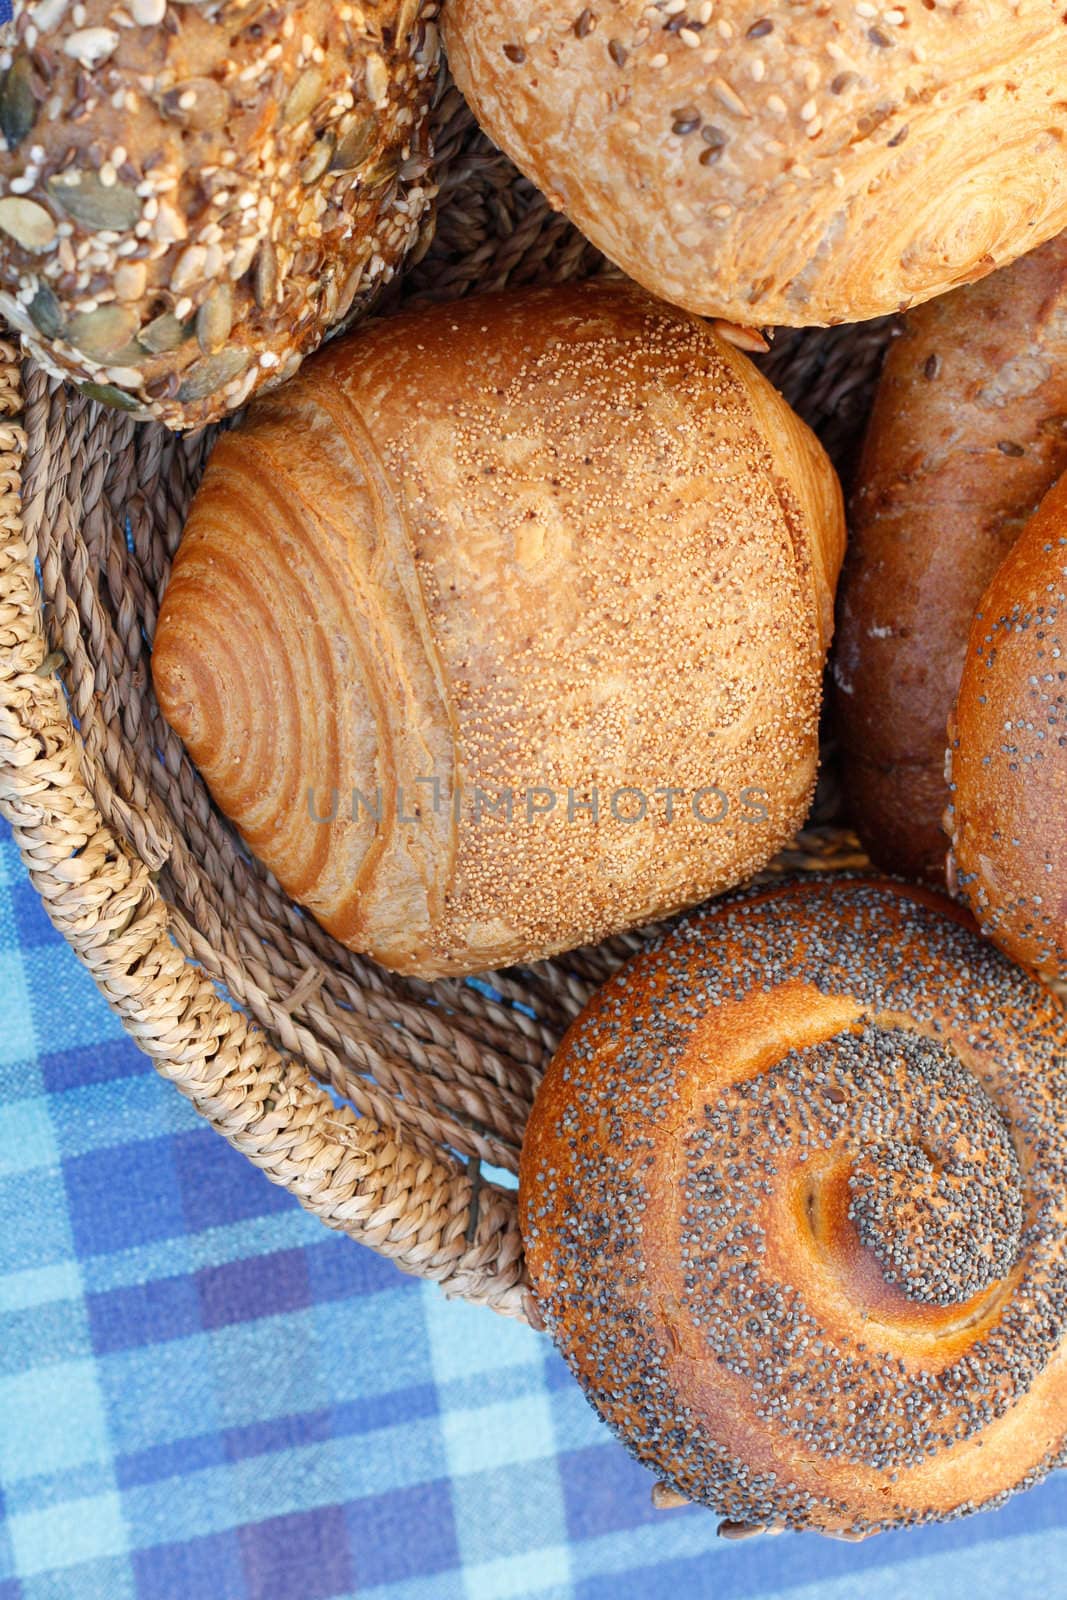 Bread rolls by leeser